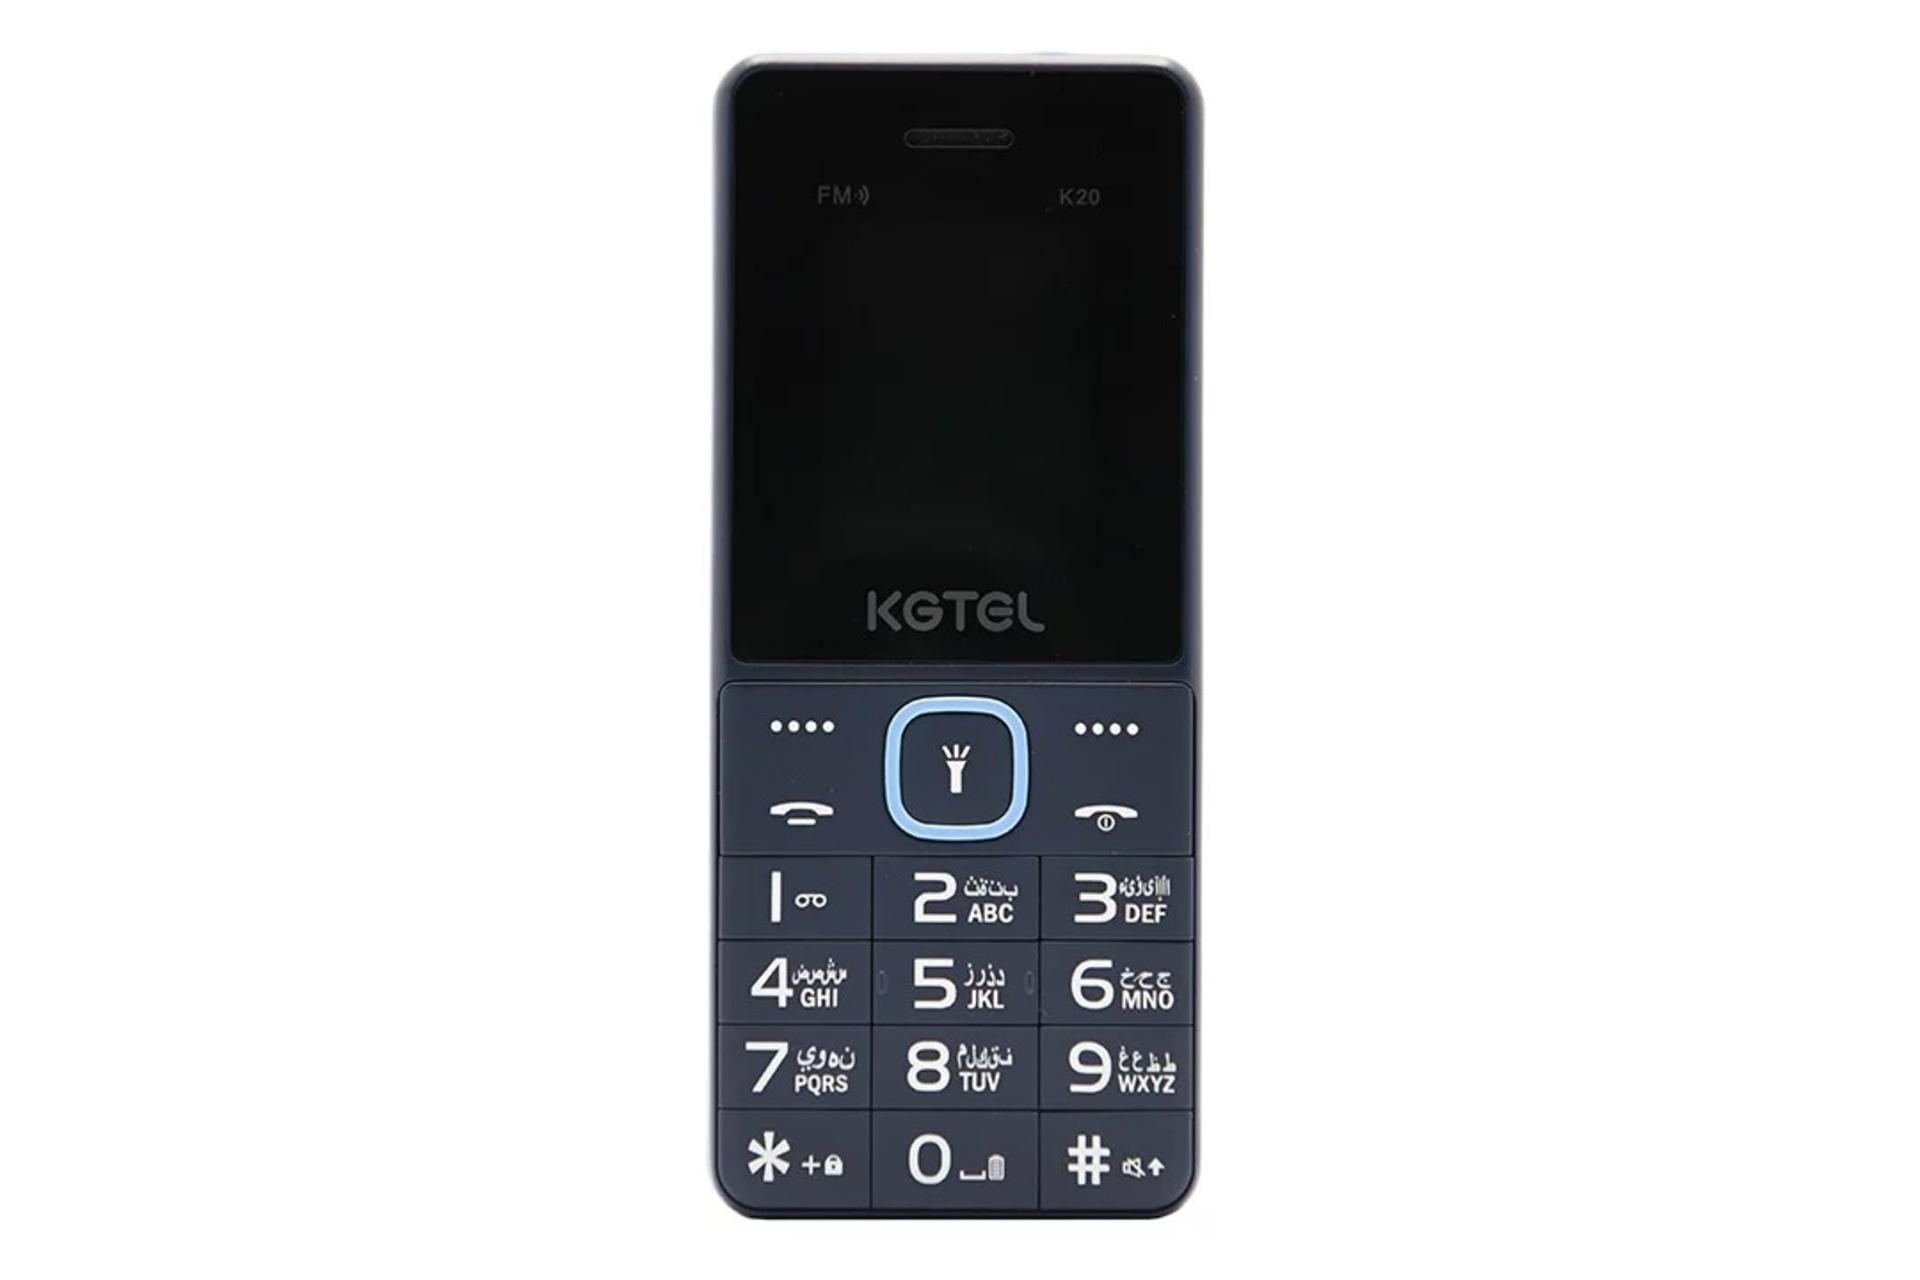 گوشی موبایل کاجیتل KGTEL K20